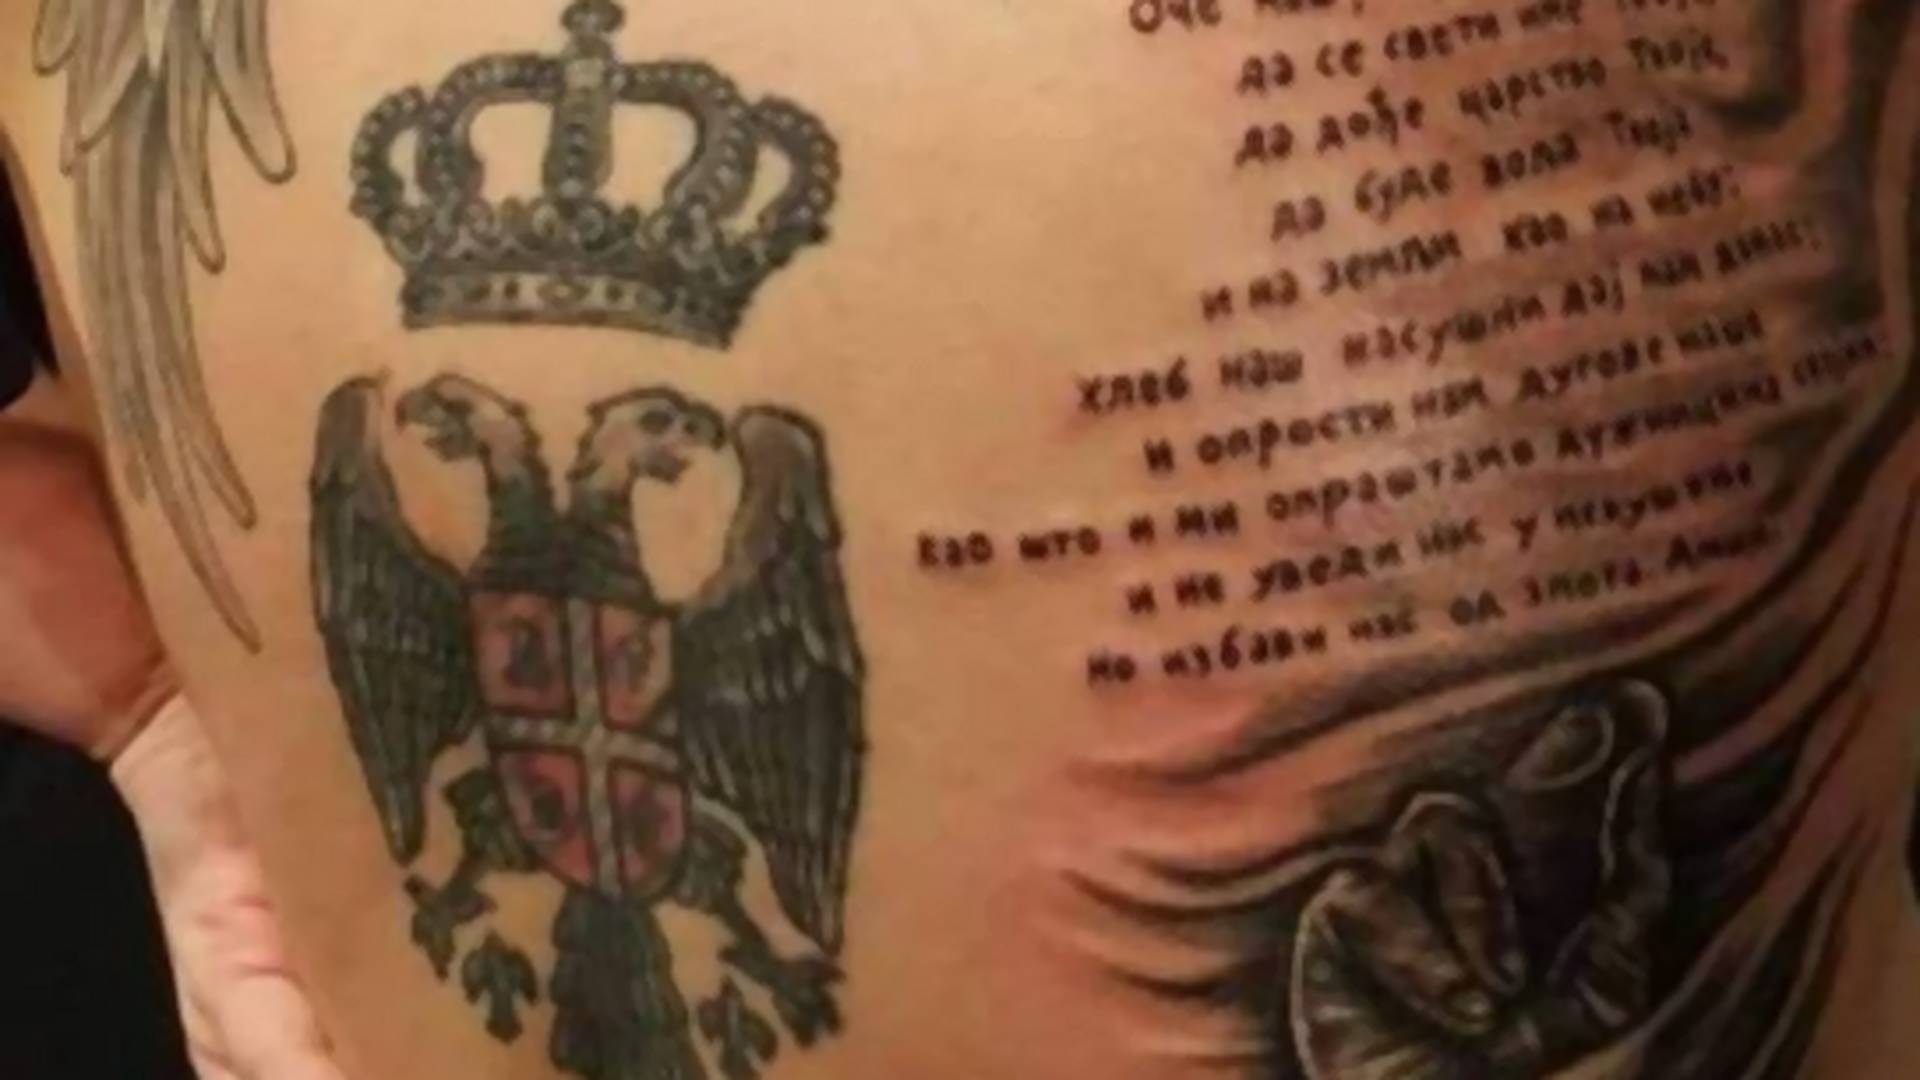 Svi pričaju o tetovaži devojke iz Srbije i imaju isti komentar - Da se prekrstiš